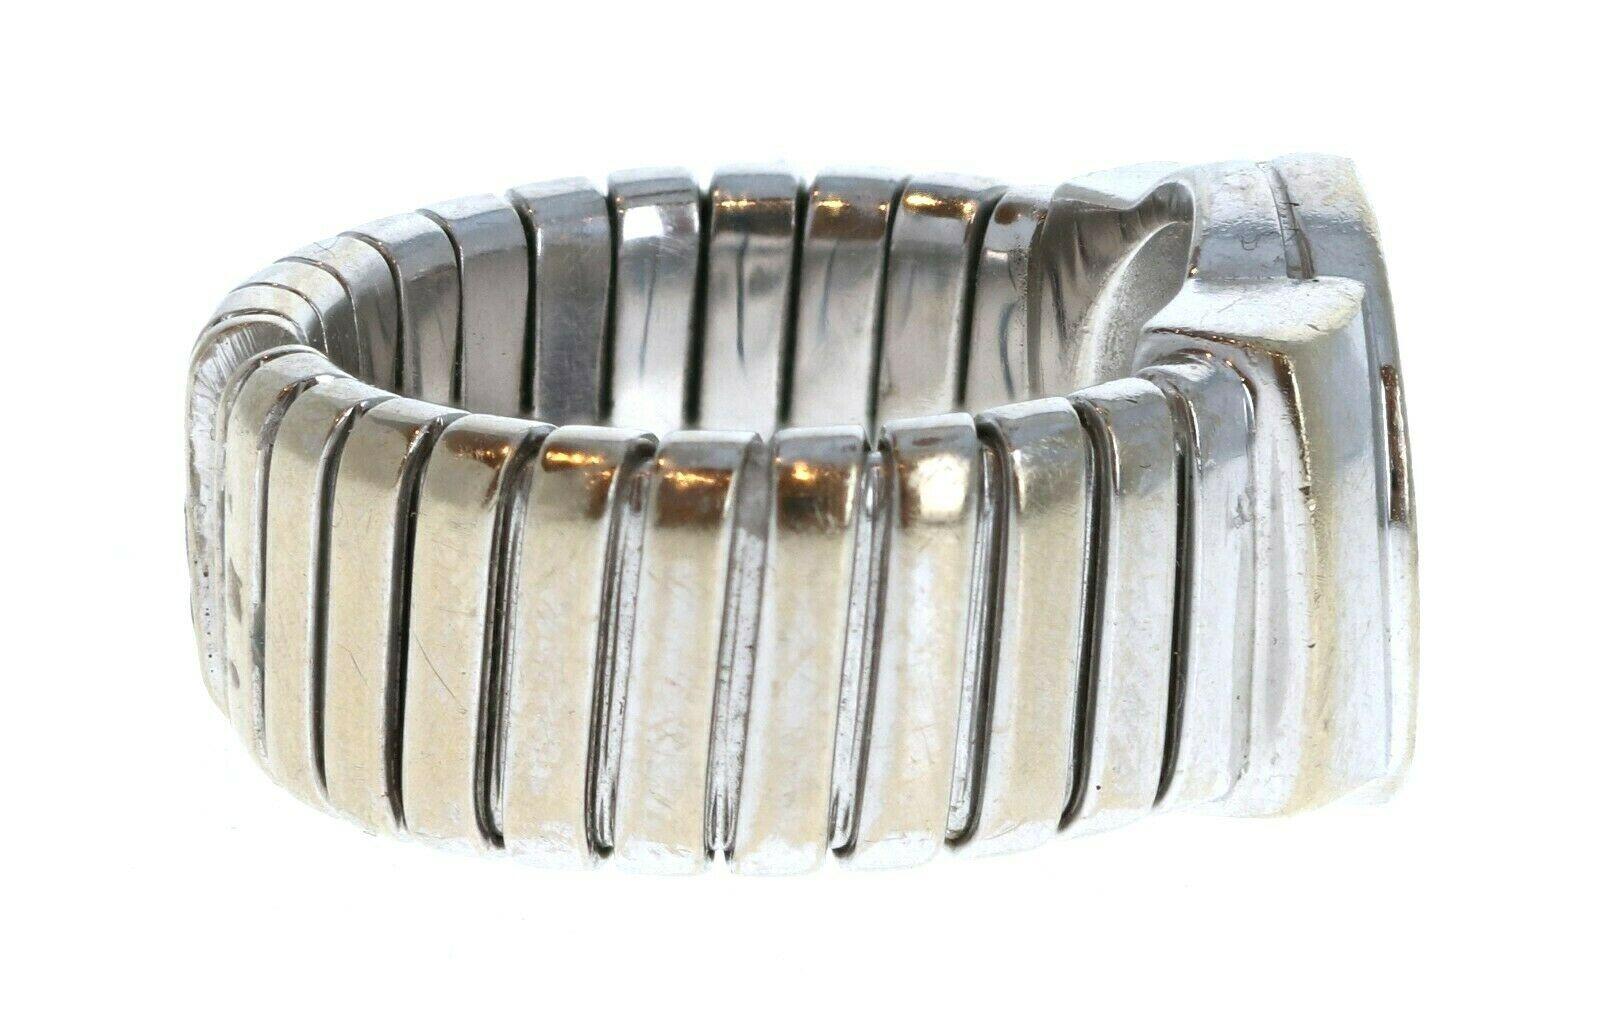 Bvlgari Bulgari 18k White Gold & Onyx Tubogas Ring 17.2g Size 6.5


For sale is a Bvlgari 18k white gold and onyx tubogas ring 
The ring is a size 6.5
 Perfect worn day or night.
 Get this stunning ring now!



Metal: 18k white gold
     
Hallmark: